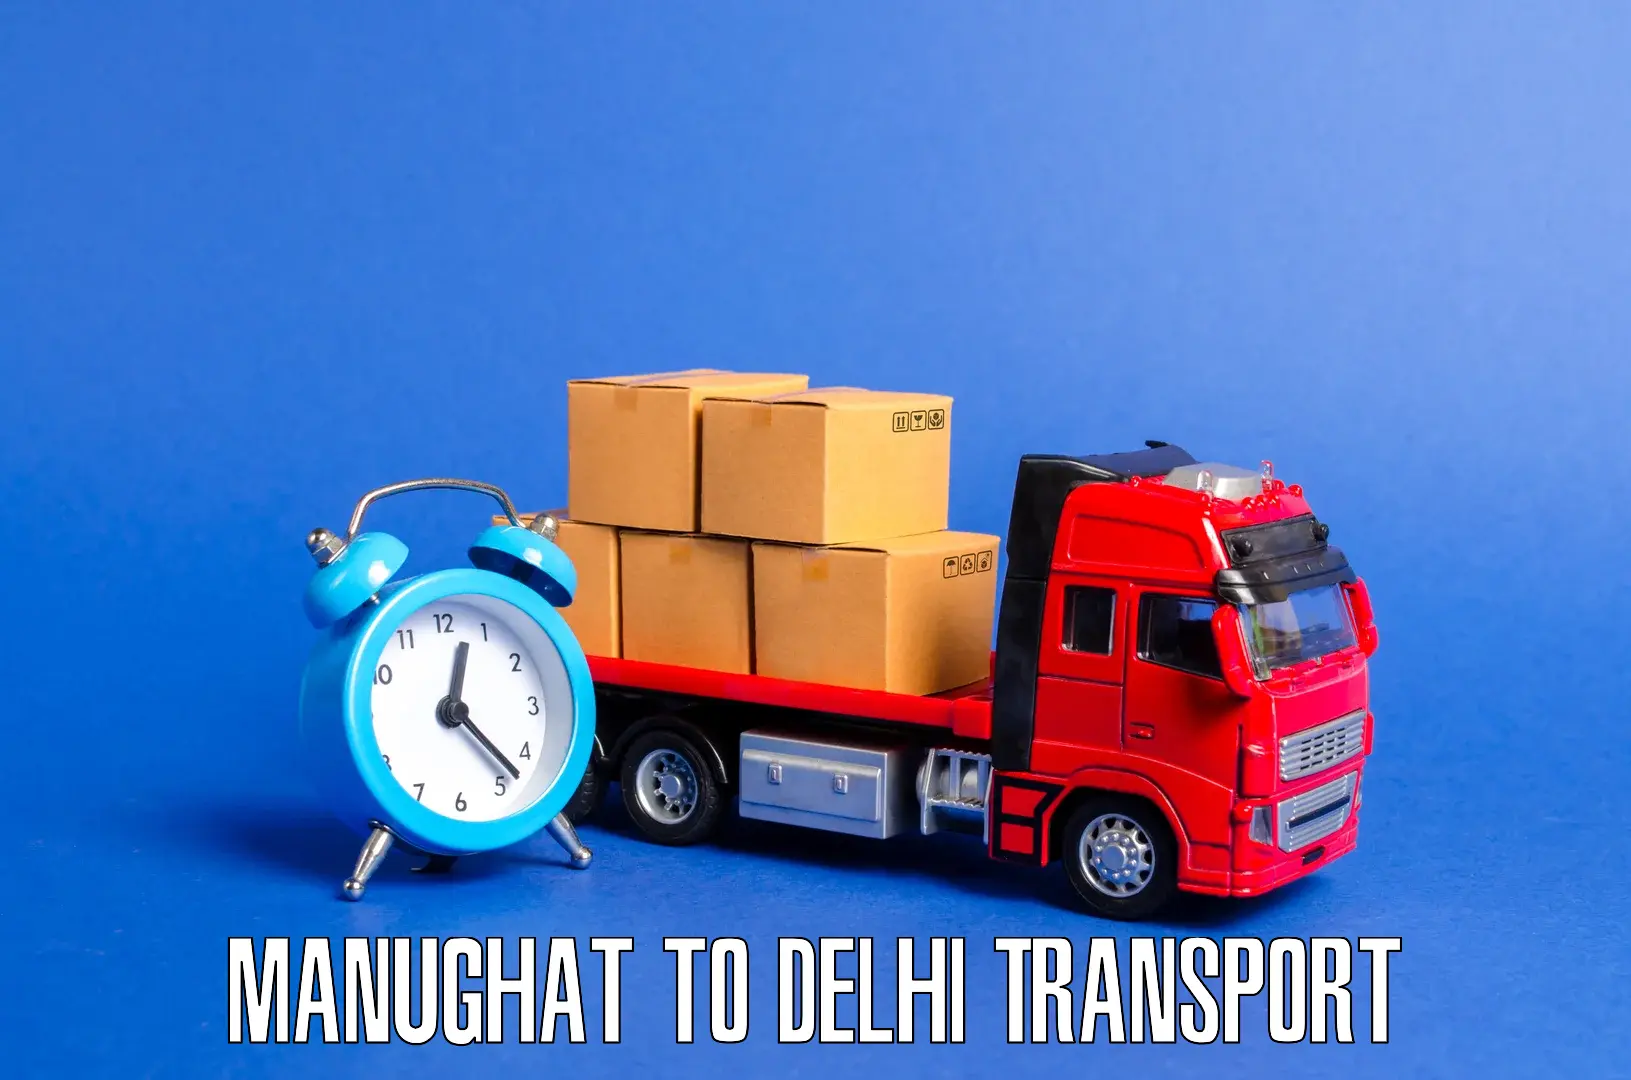 Furniture transport service Manughat to Delhi